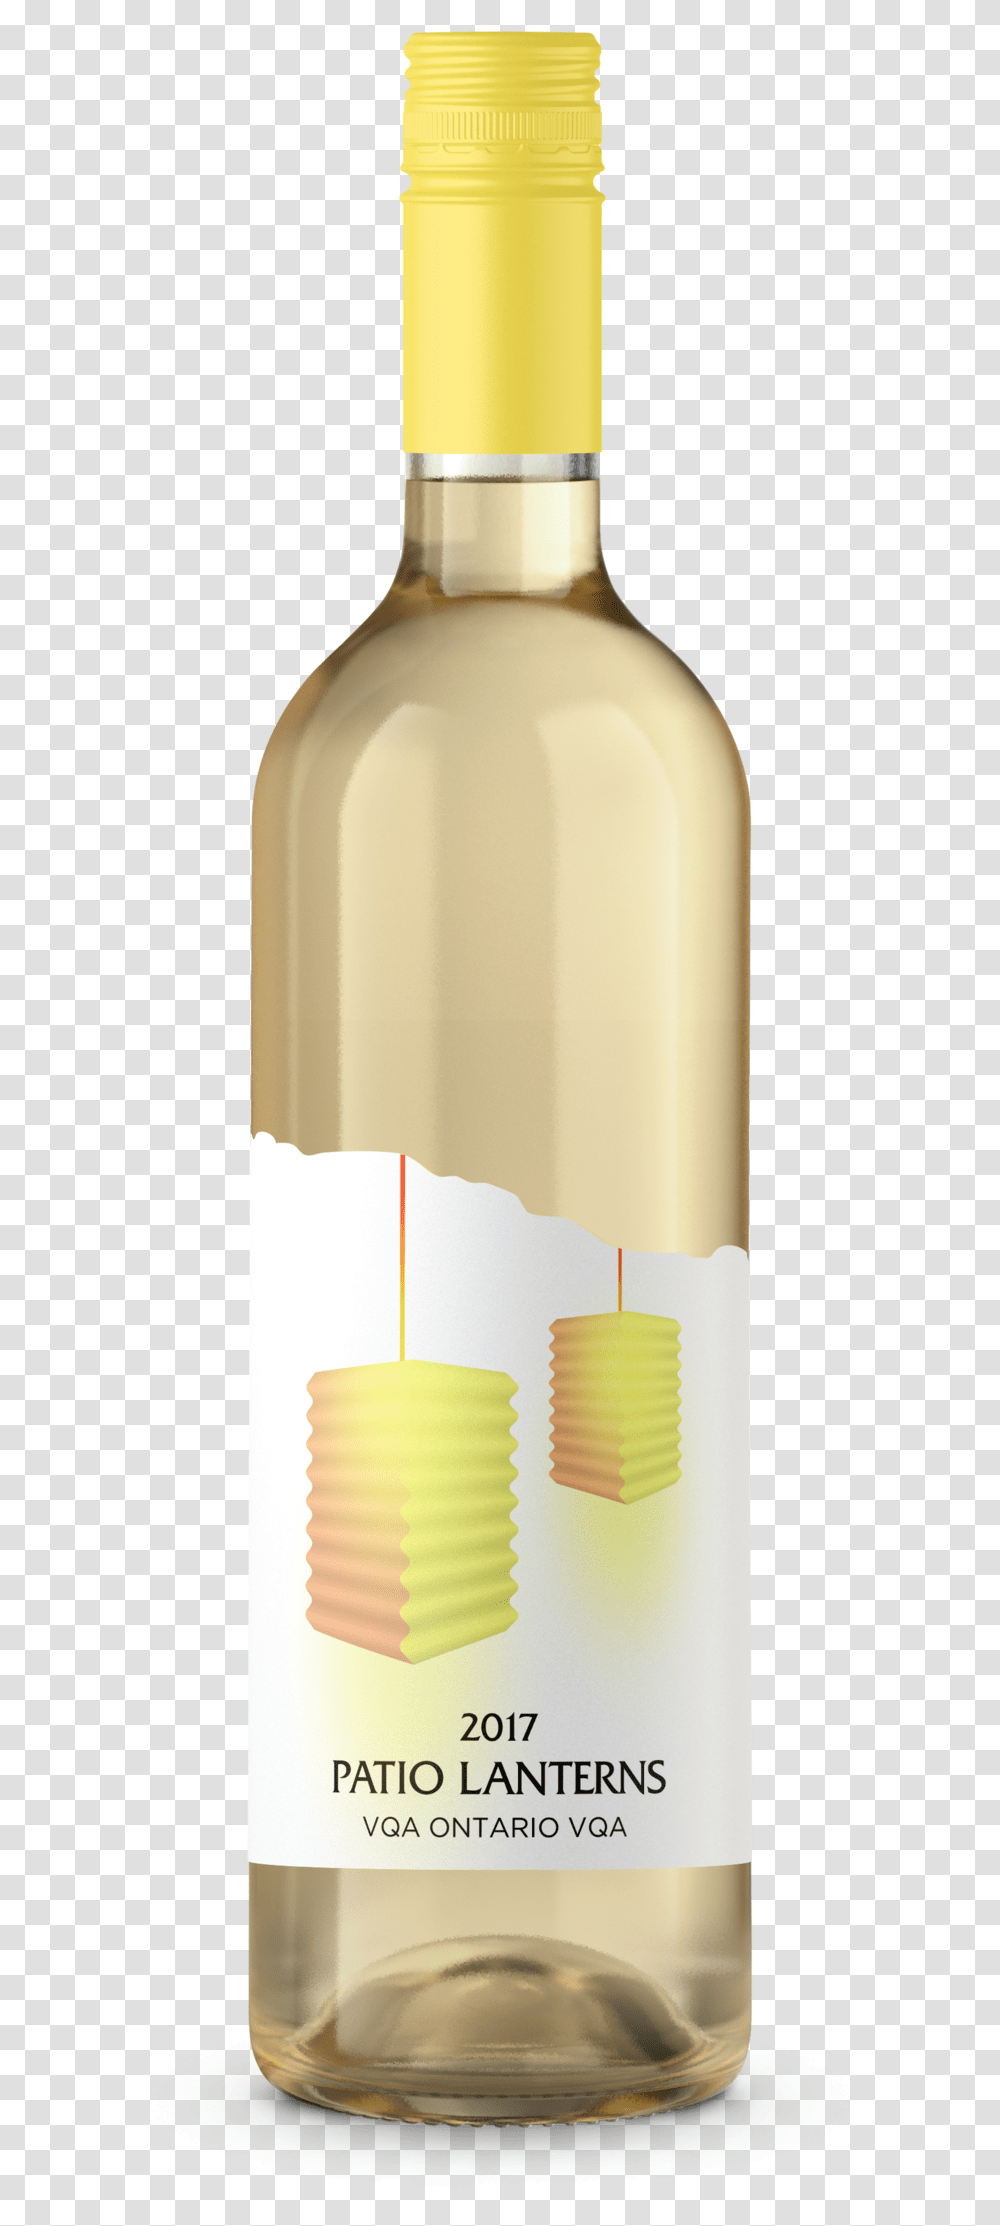 2017 Patio Lanterns Glass Bottle, Candle, Beverage, Drink, Cylinder Transparent Png